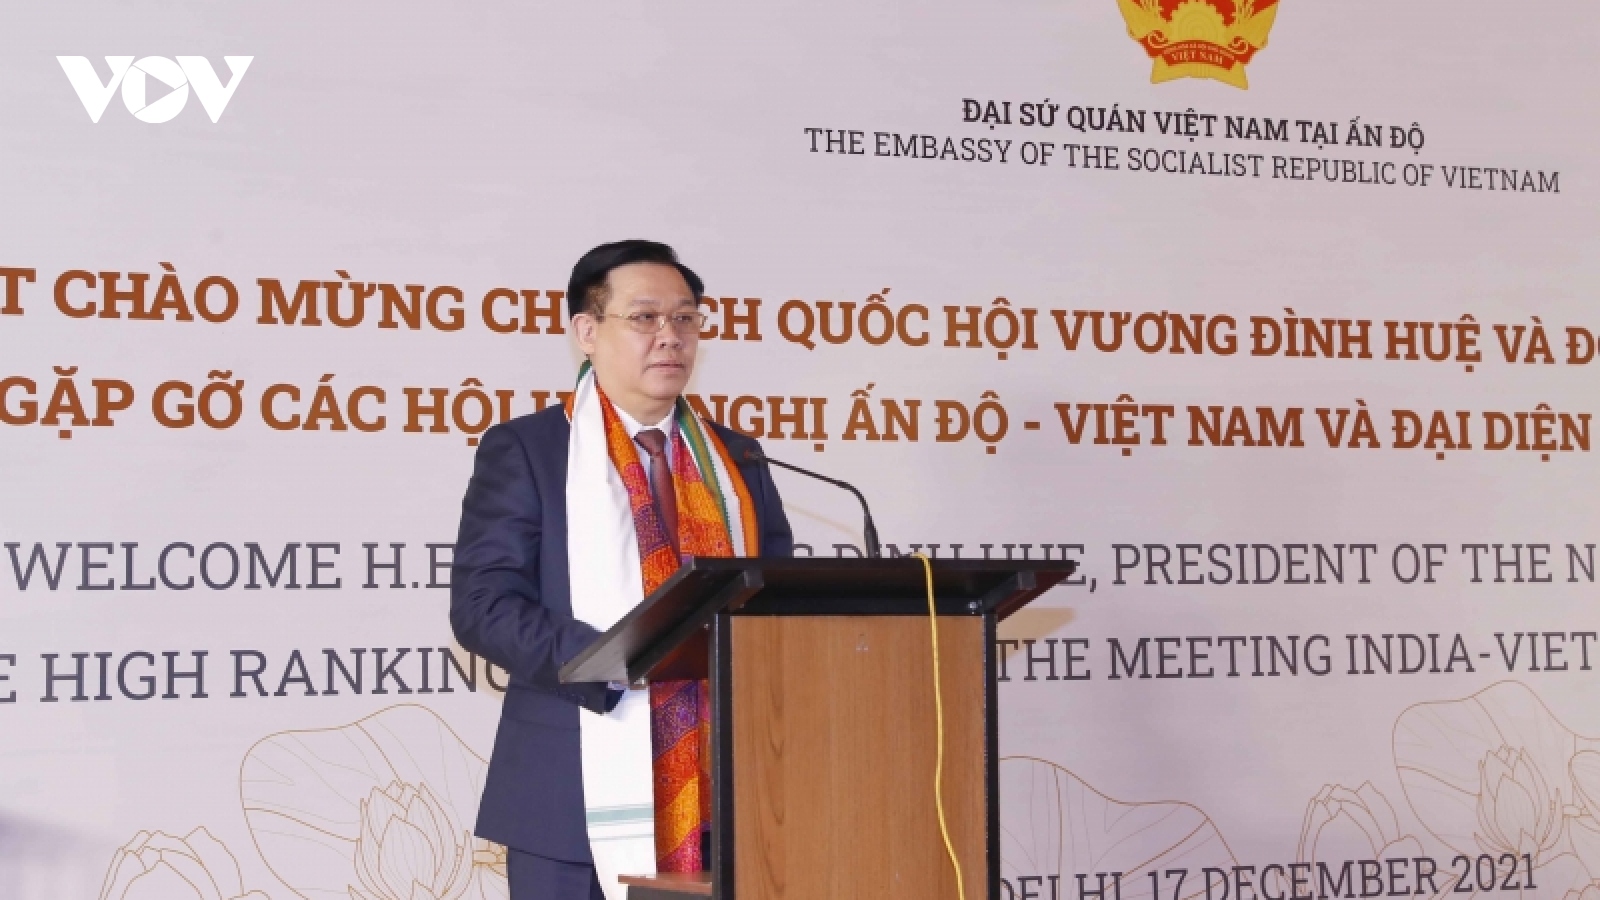 Chủ tịch Quốc hội Vương Đình Huệ gặp gỡ các hội hữu nghị Ấn Độ - Việt Nam